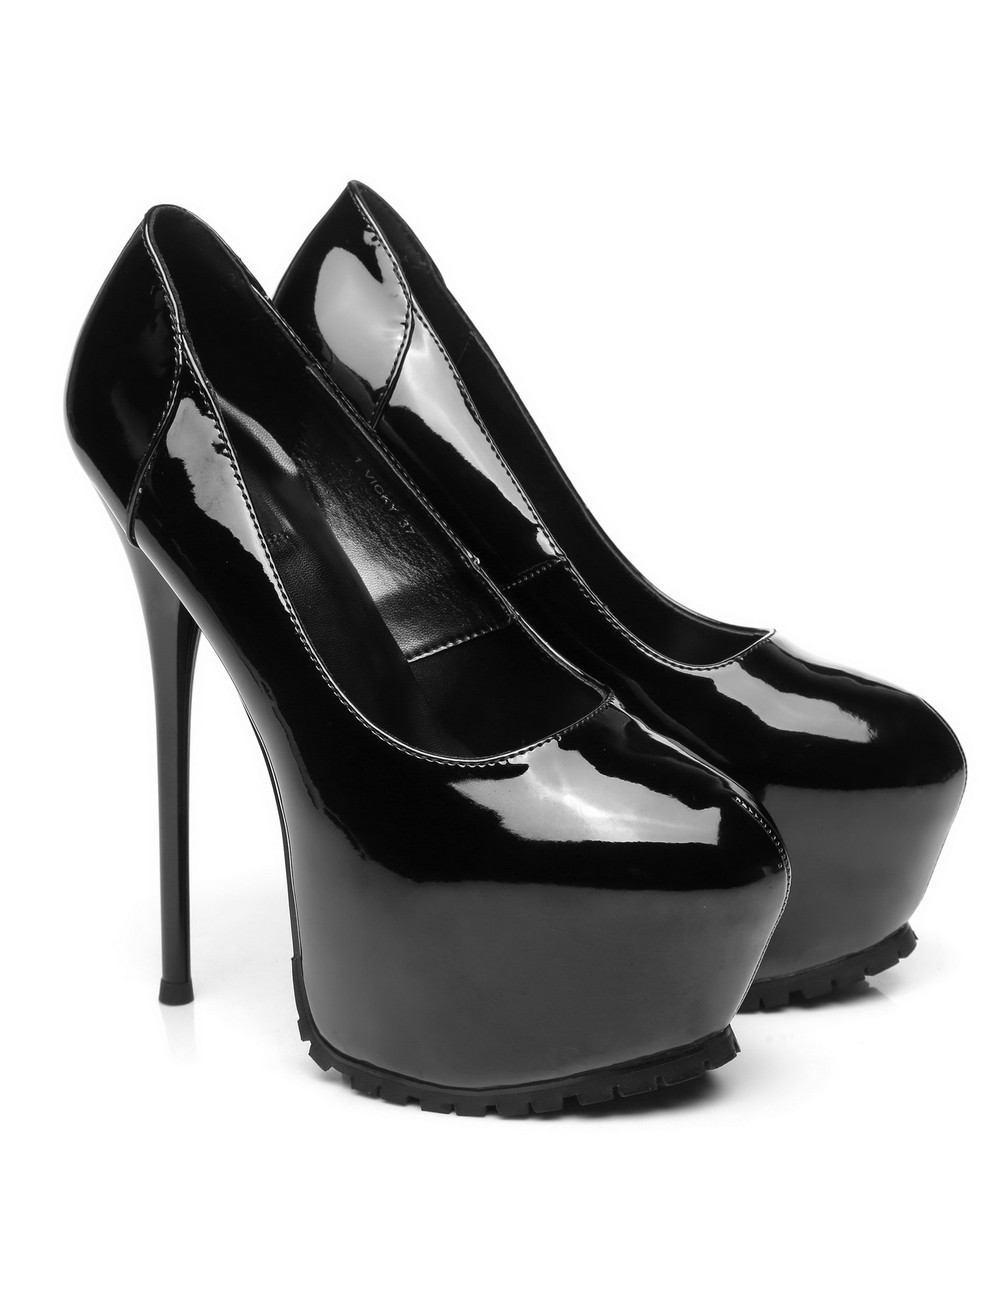 Black shiny Vicky Giaro 16cm platform heel profile pumps - Giaro High ...